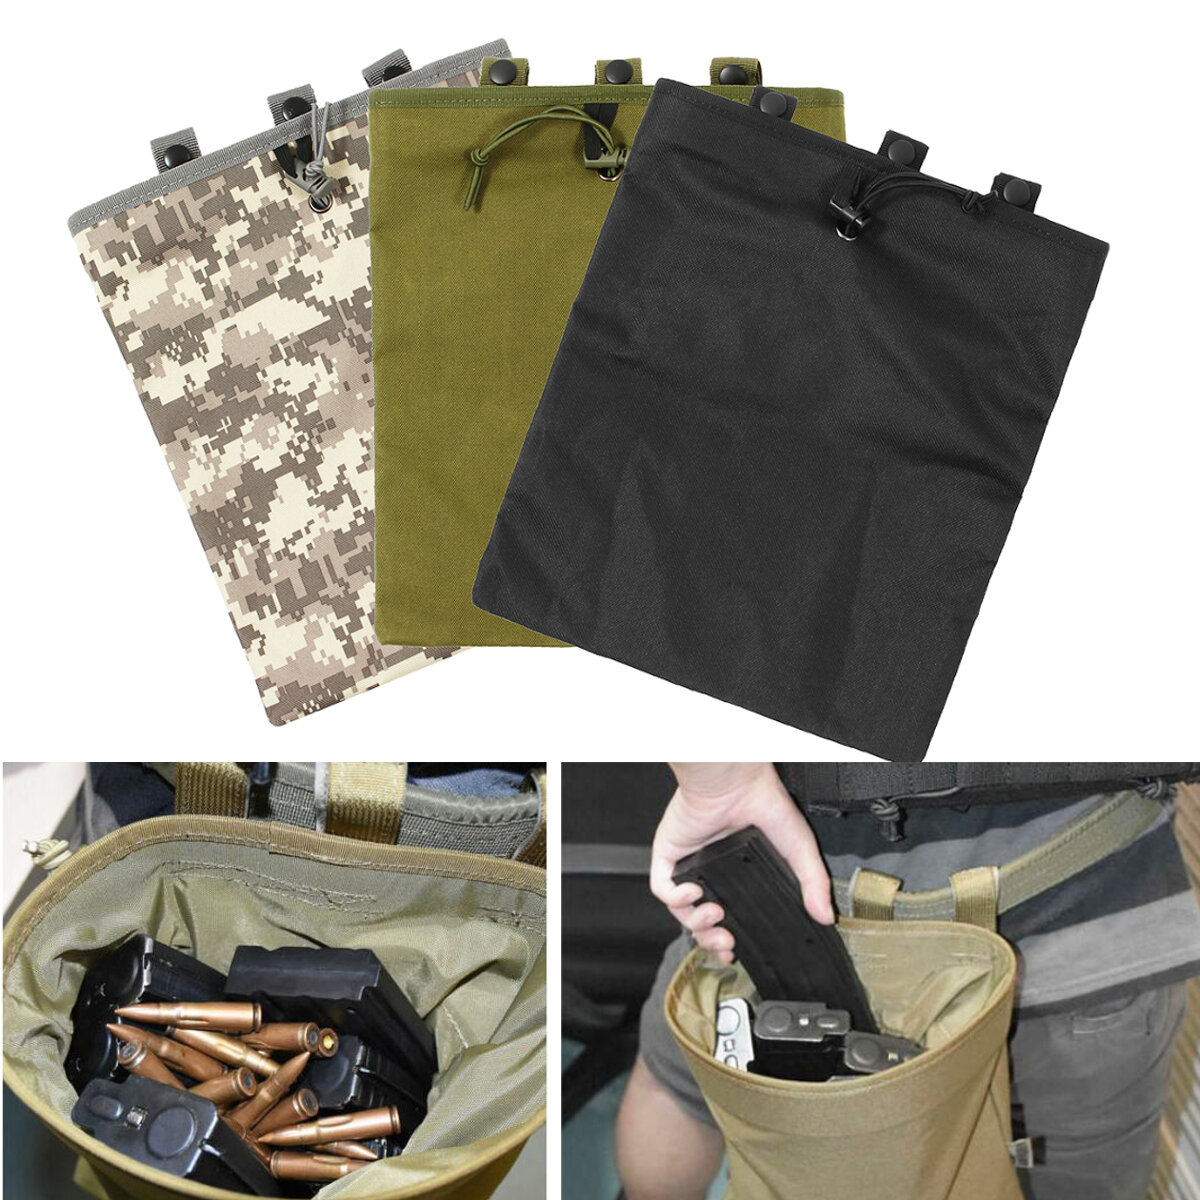 Bolsa tática de tecido Oxford de 30x25 cm com coldre para revistas e bolsa de munição para caça e pesca.